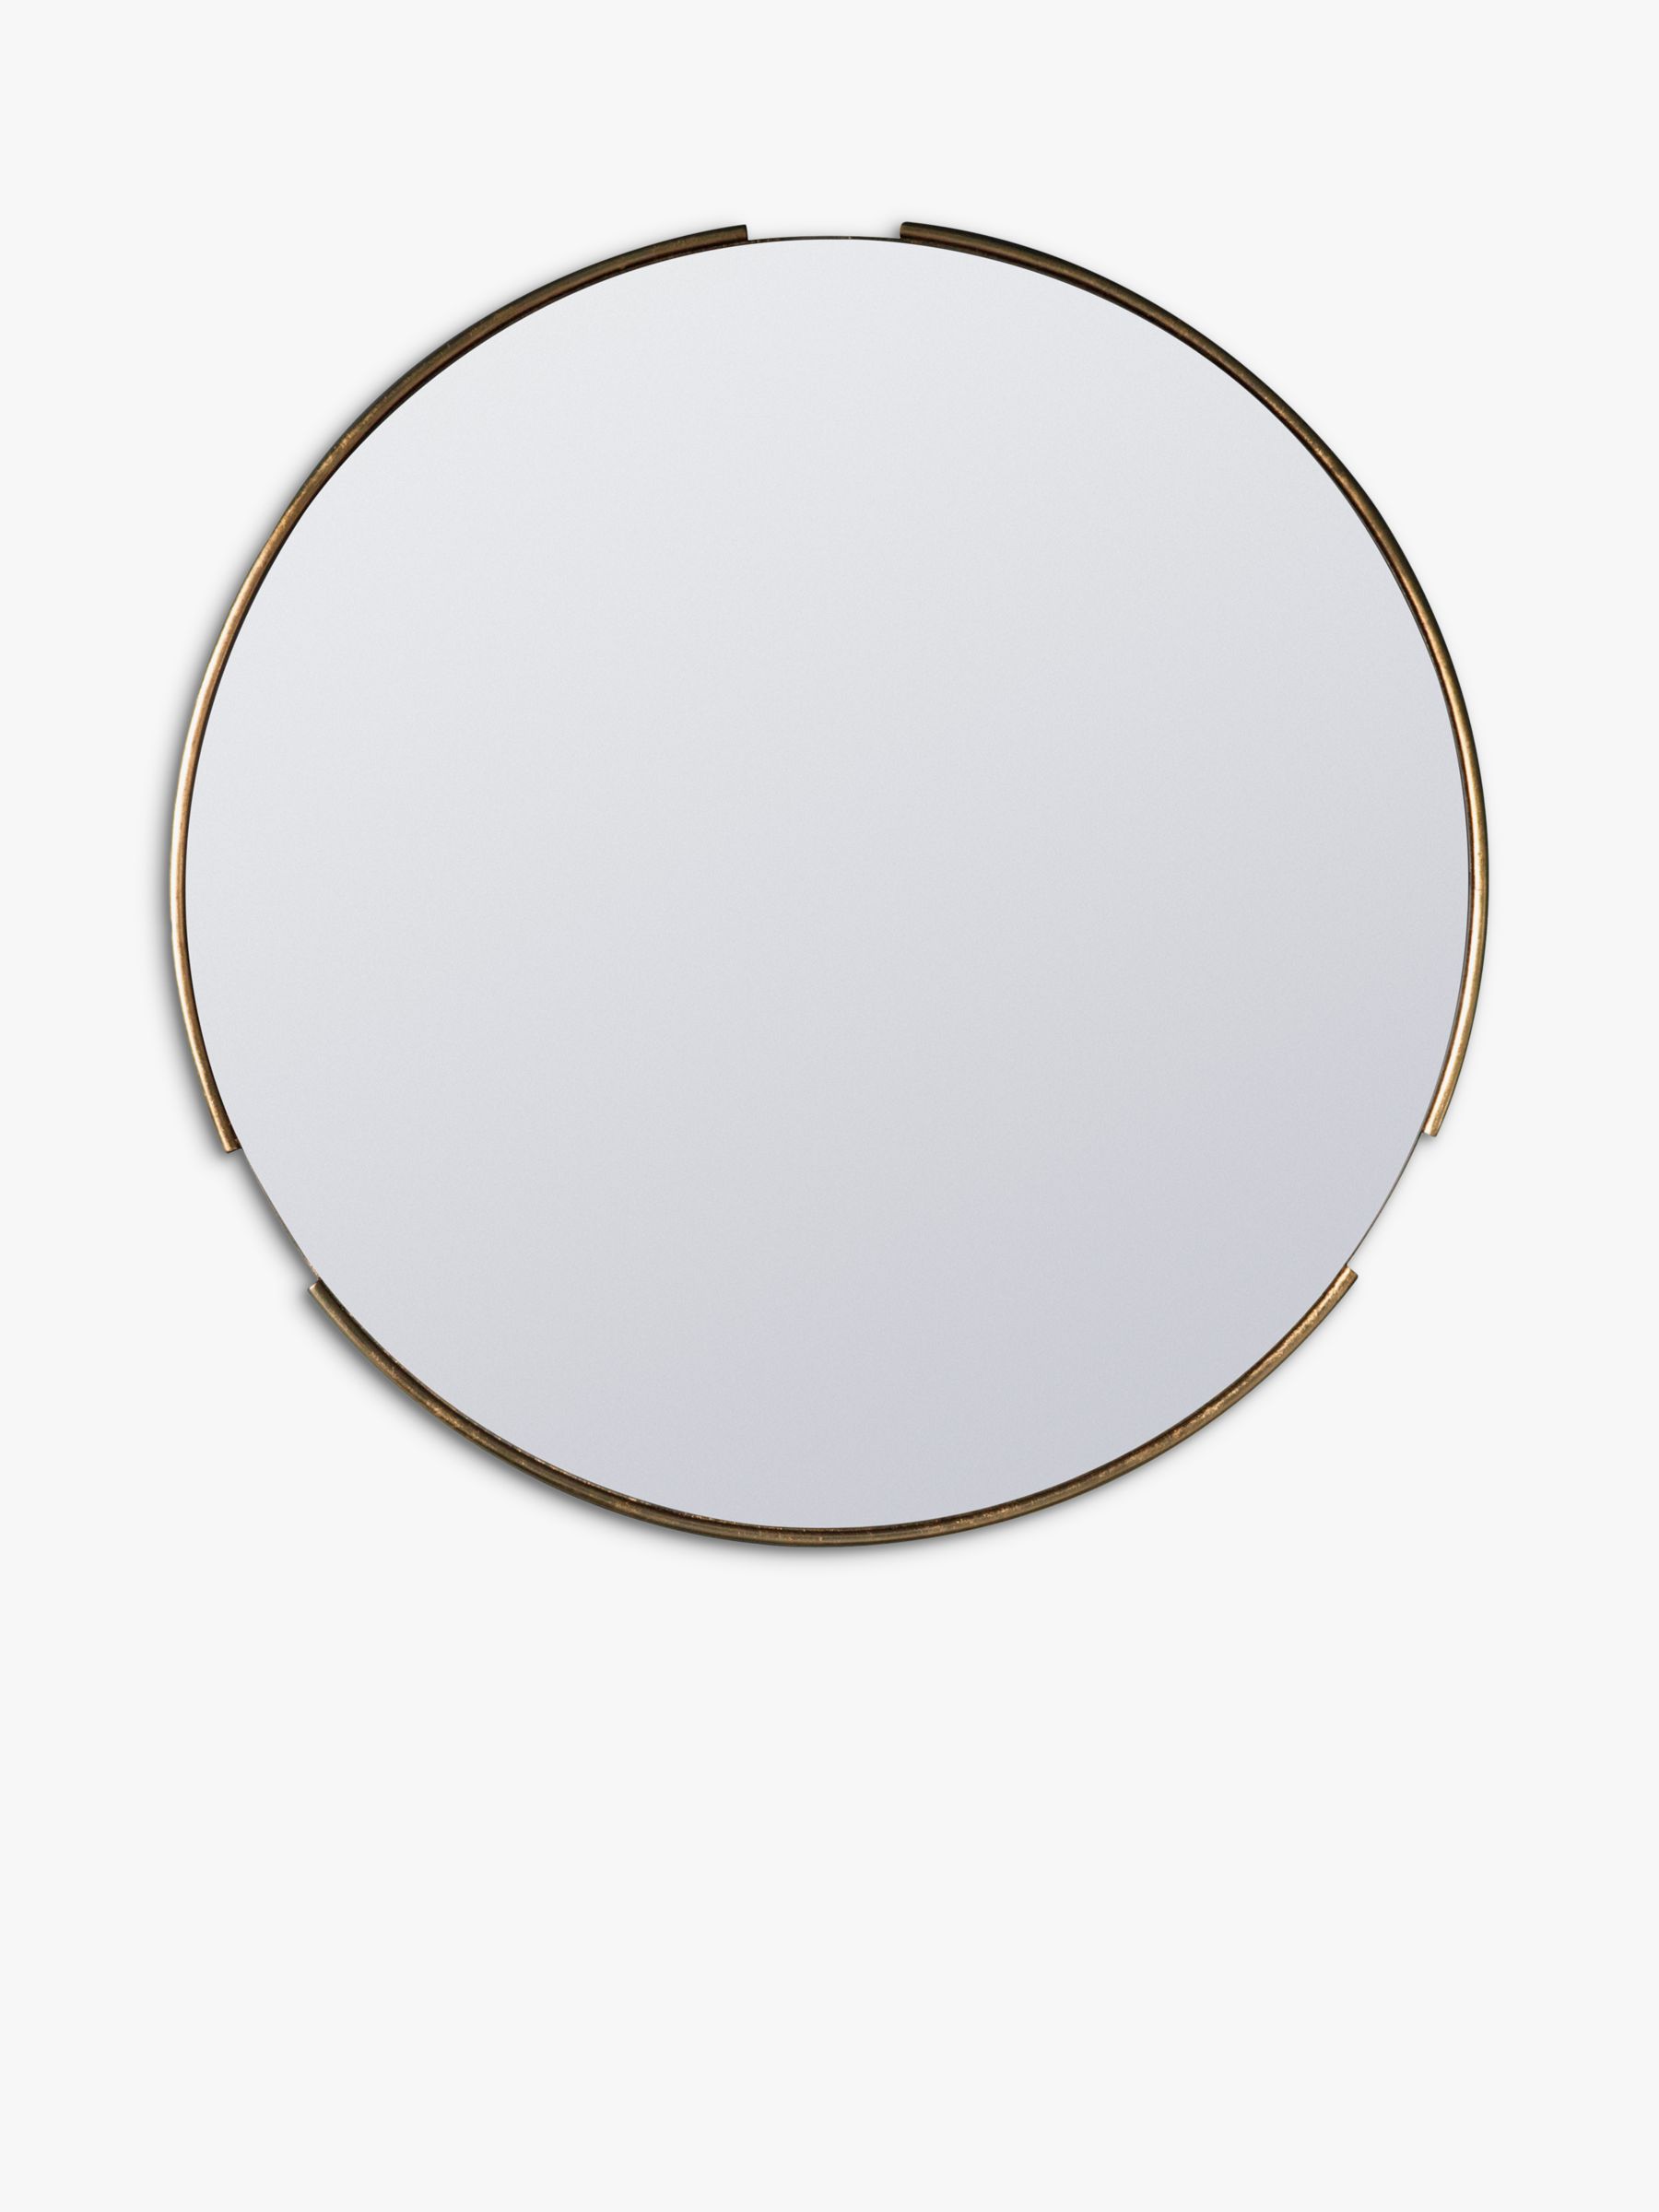 Fitzroy Round Wood Frame Mirror 80cm, Round Gold Mirror 80cm